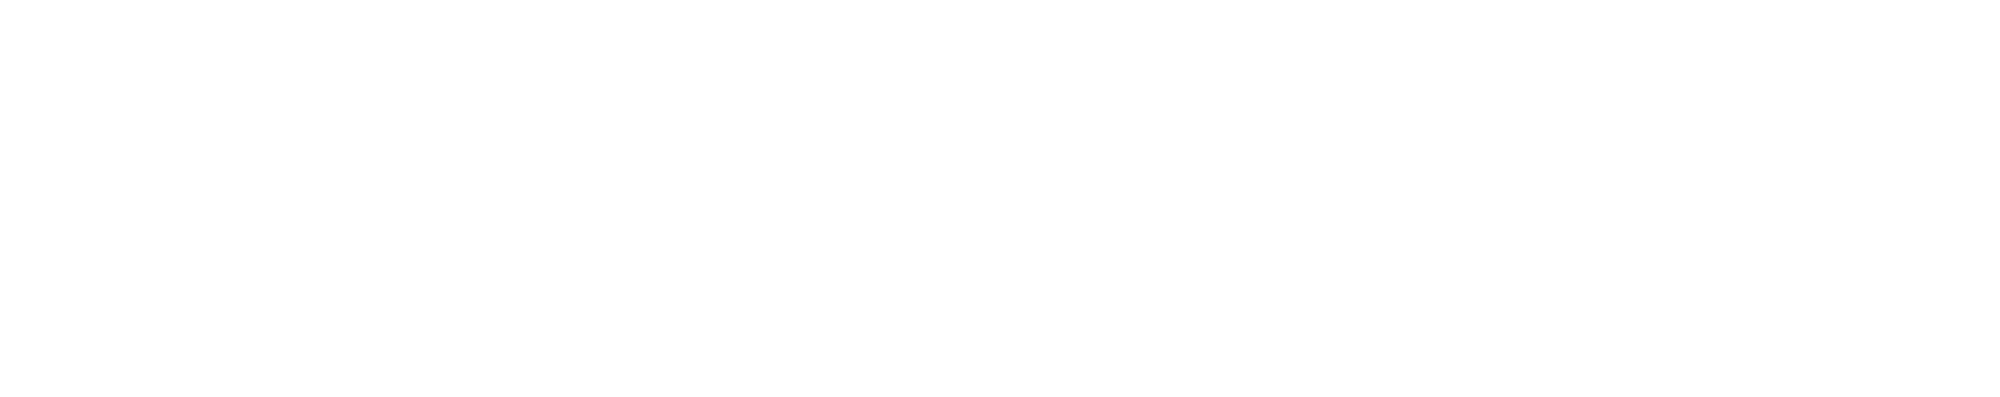 Google Art & Culture Logo